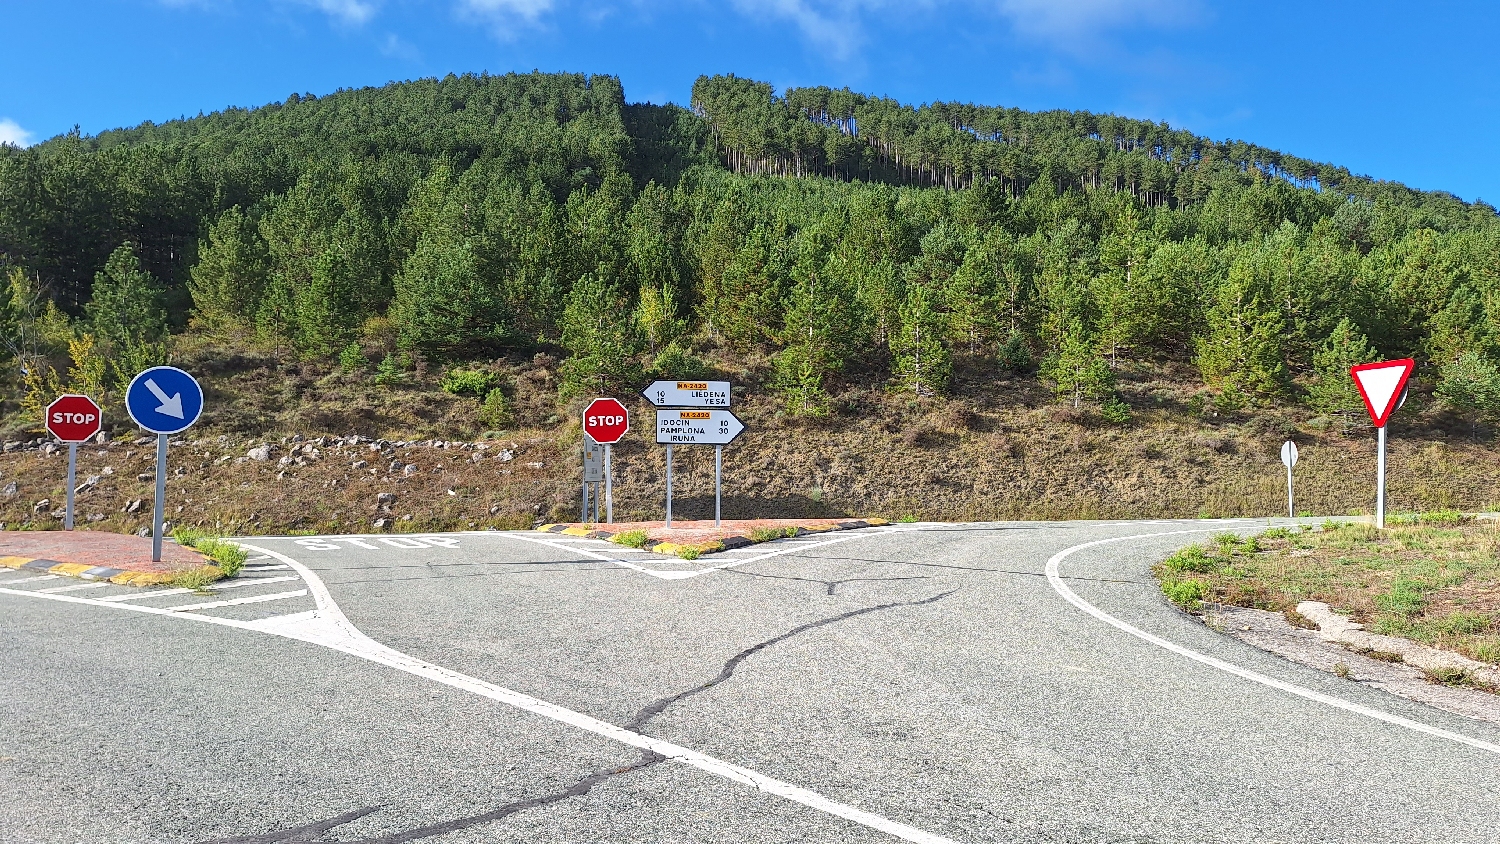 El Camino, Aragon út, útelágazás, itt jobbra kell menni